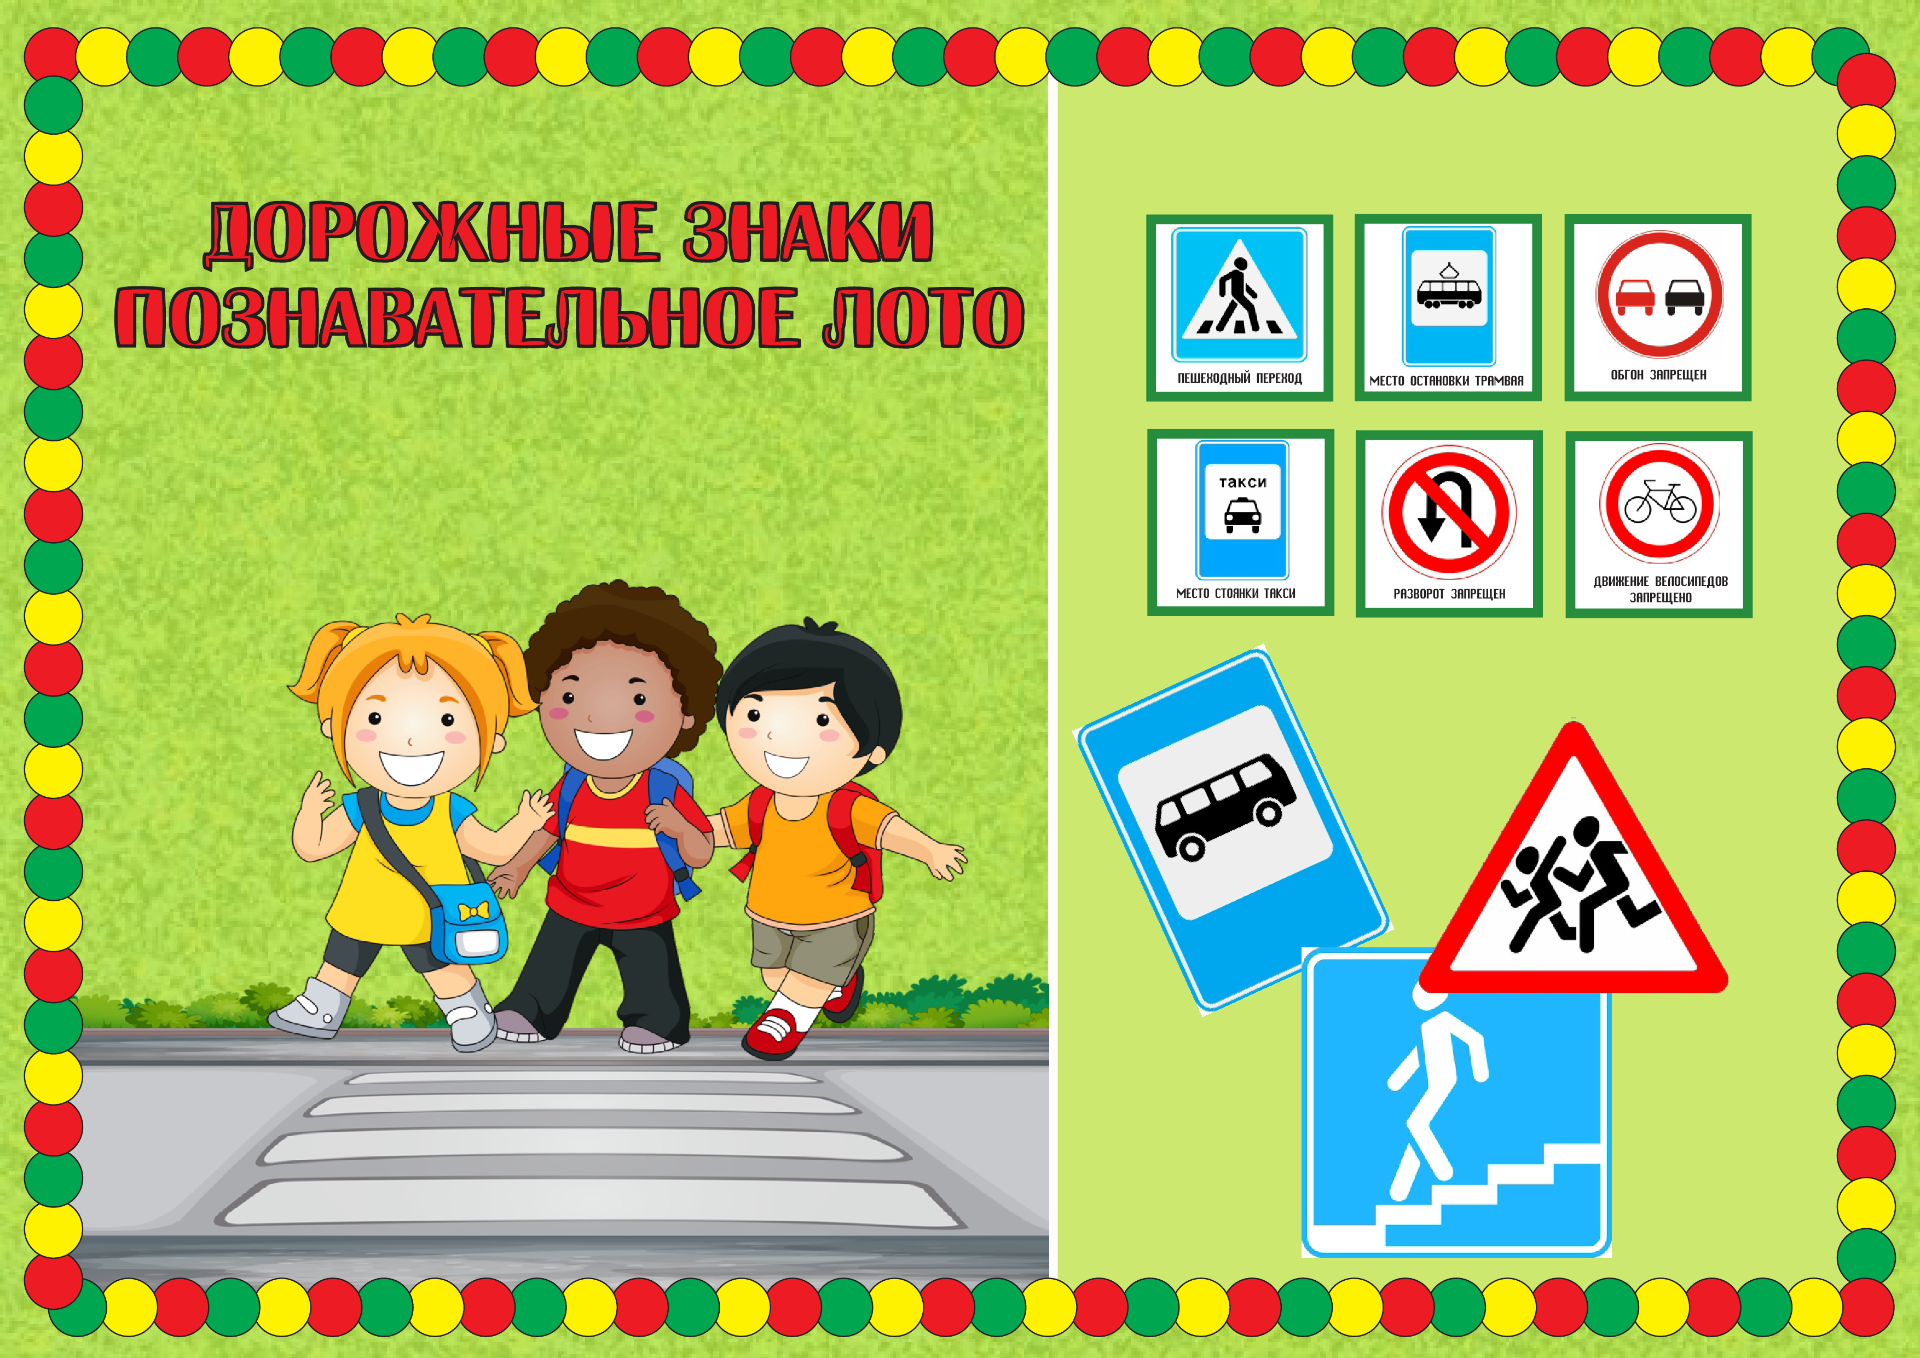 Игры по пдд с целью. Лото дорожные знаки игра для дошкольников. Игра лото по ПДД для дошкольников. Дорожные знакаки для детей. Иллюстрации дорожных знаков для детей.